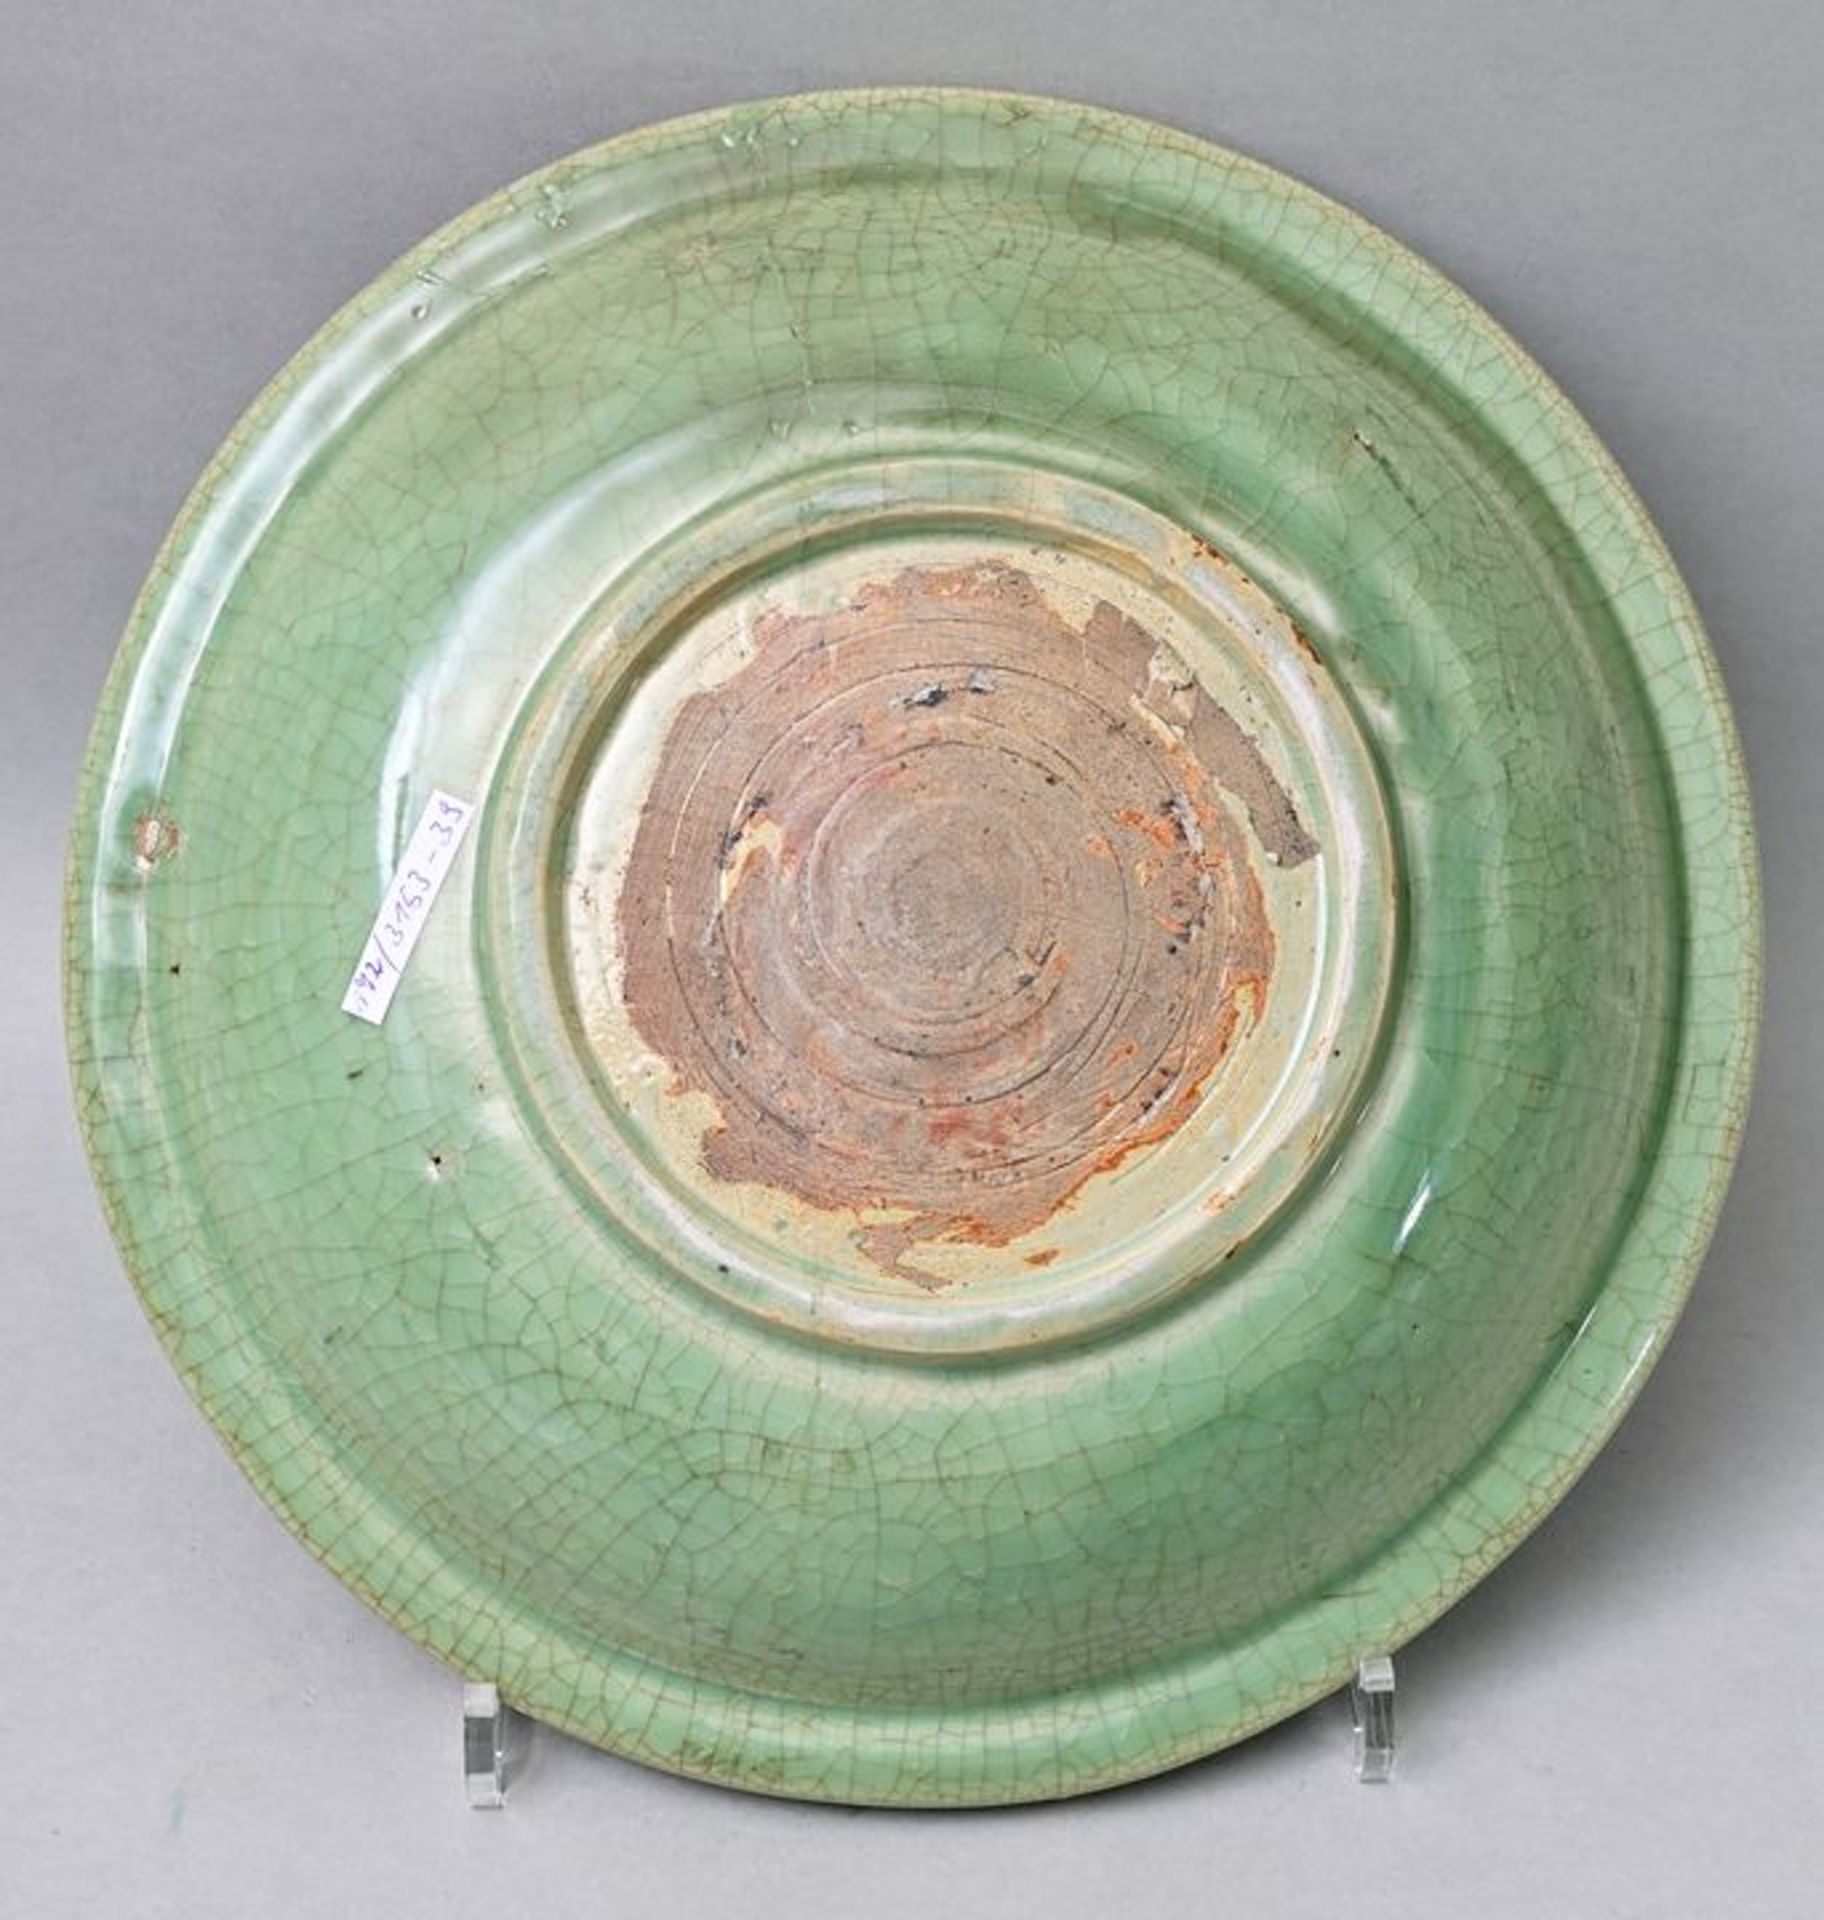 Platte grüne Glasur/ greenware plate - Image 3 of 4